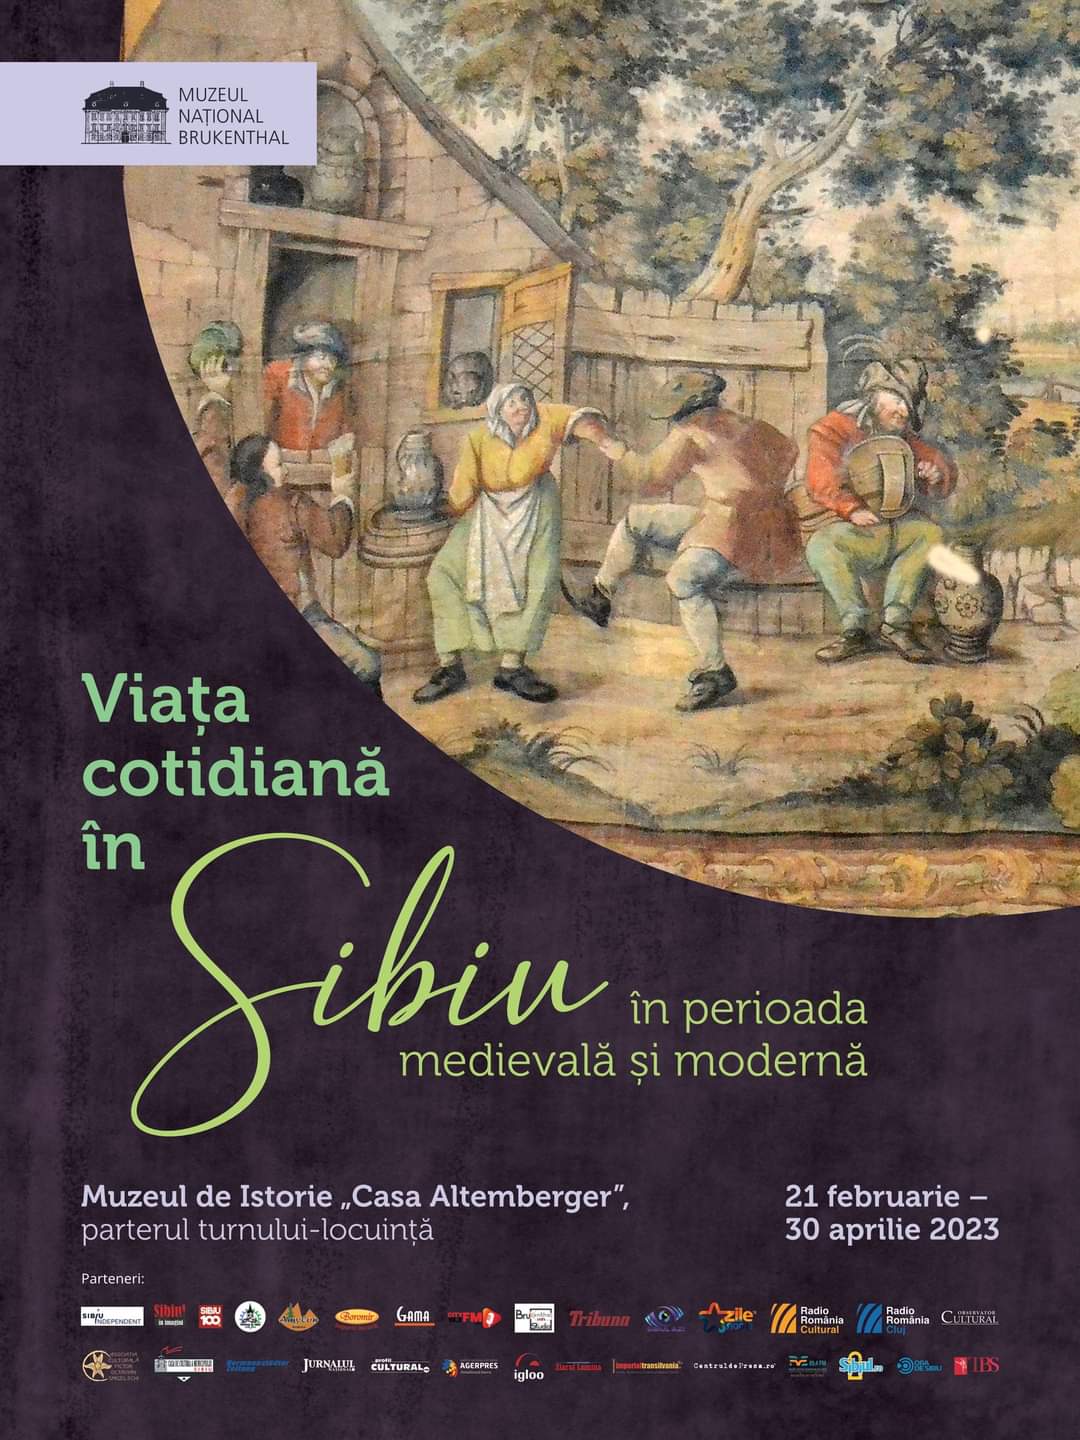 Viata cotidiana in Sibiu in perioada medievala si moderna